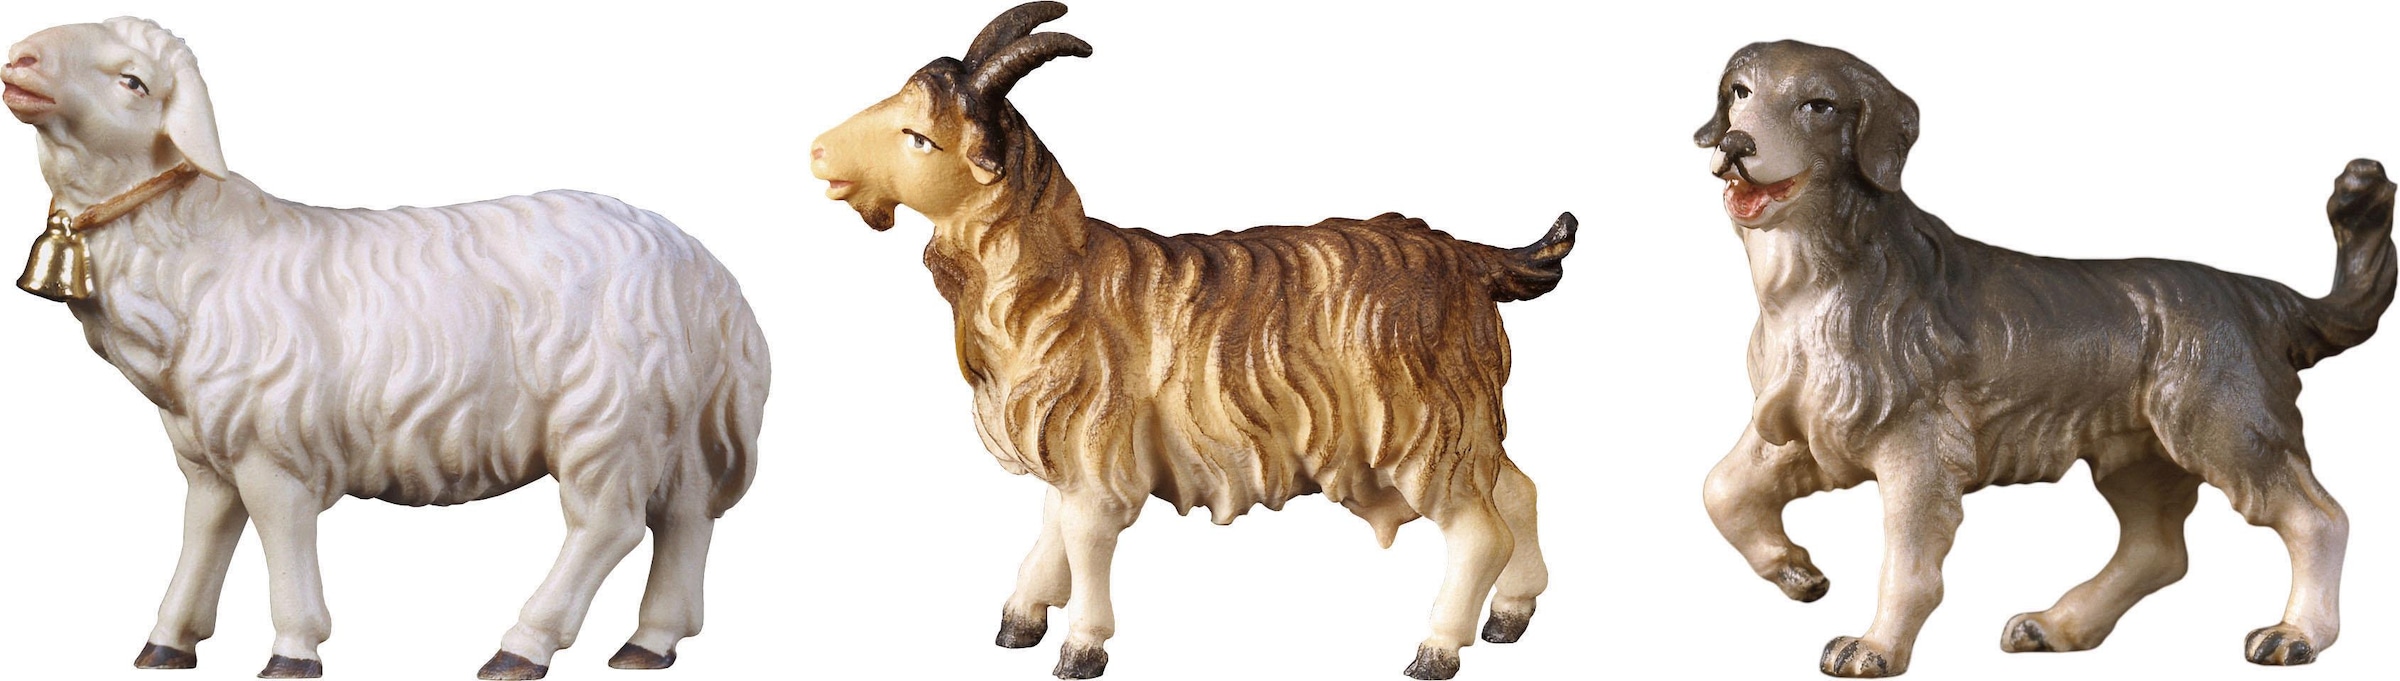 ULPE WOODART Krippenfigur »Schaf, Ziege, Hund, Weihnachtsdeko«, Handarbeit, hochwertige Holzschnitzkunst